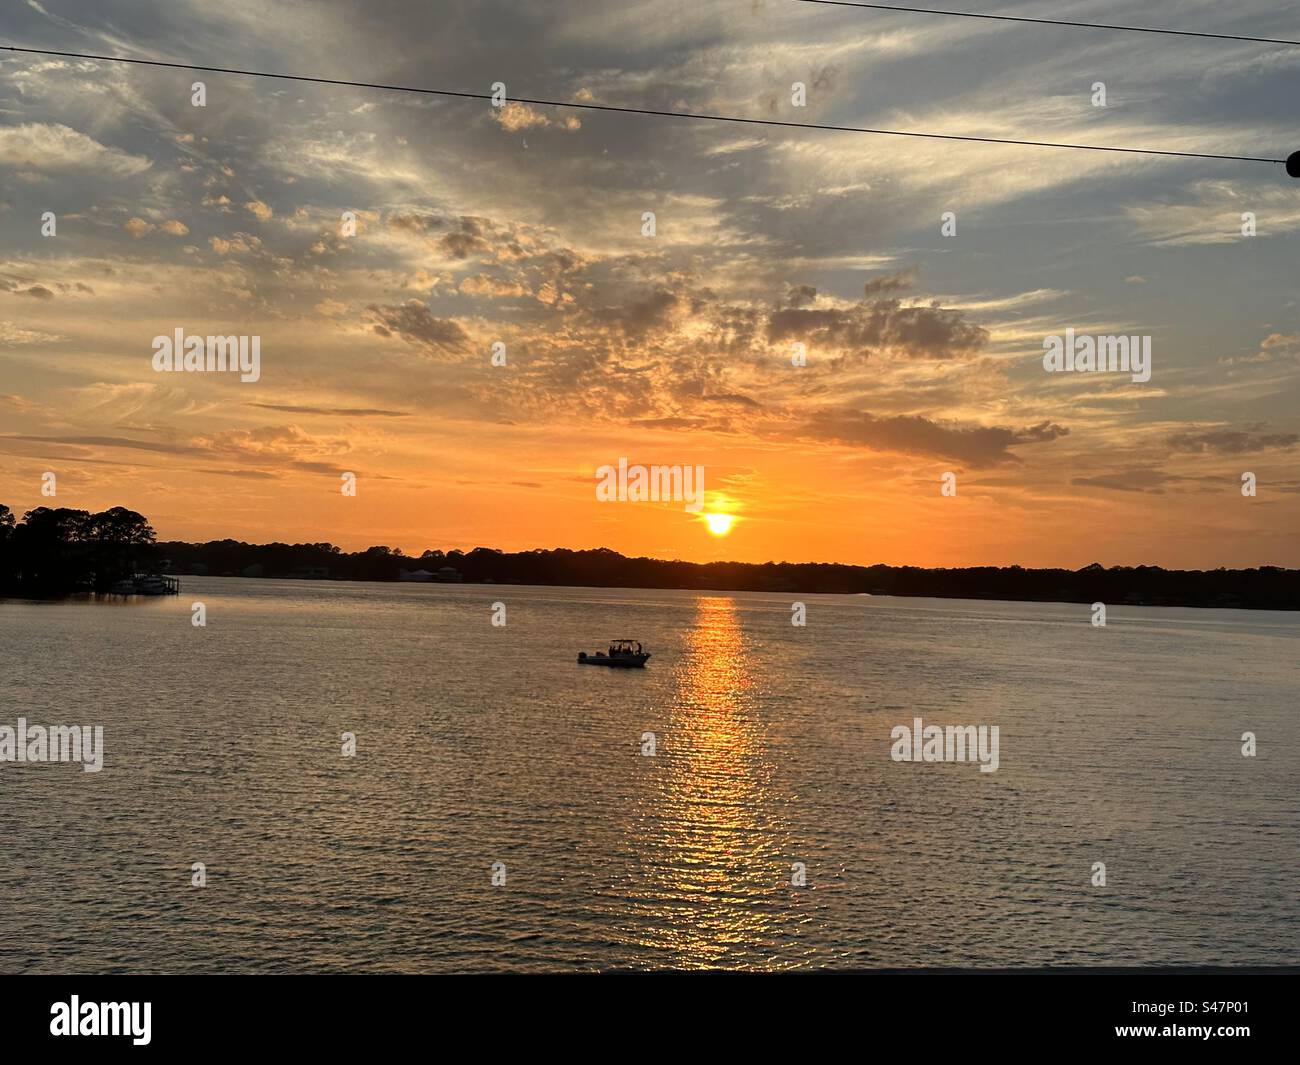 Ein herrlicher und warmer Sonnenuntergang in der Florida Panhandle. Mit einem Fischer, der sich der Sonnenreflexion auf dem Wasser nähert. Stockfoto